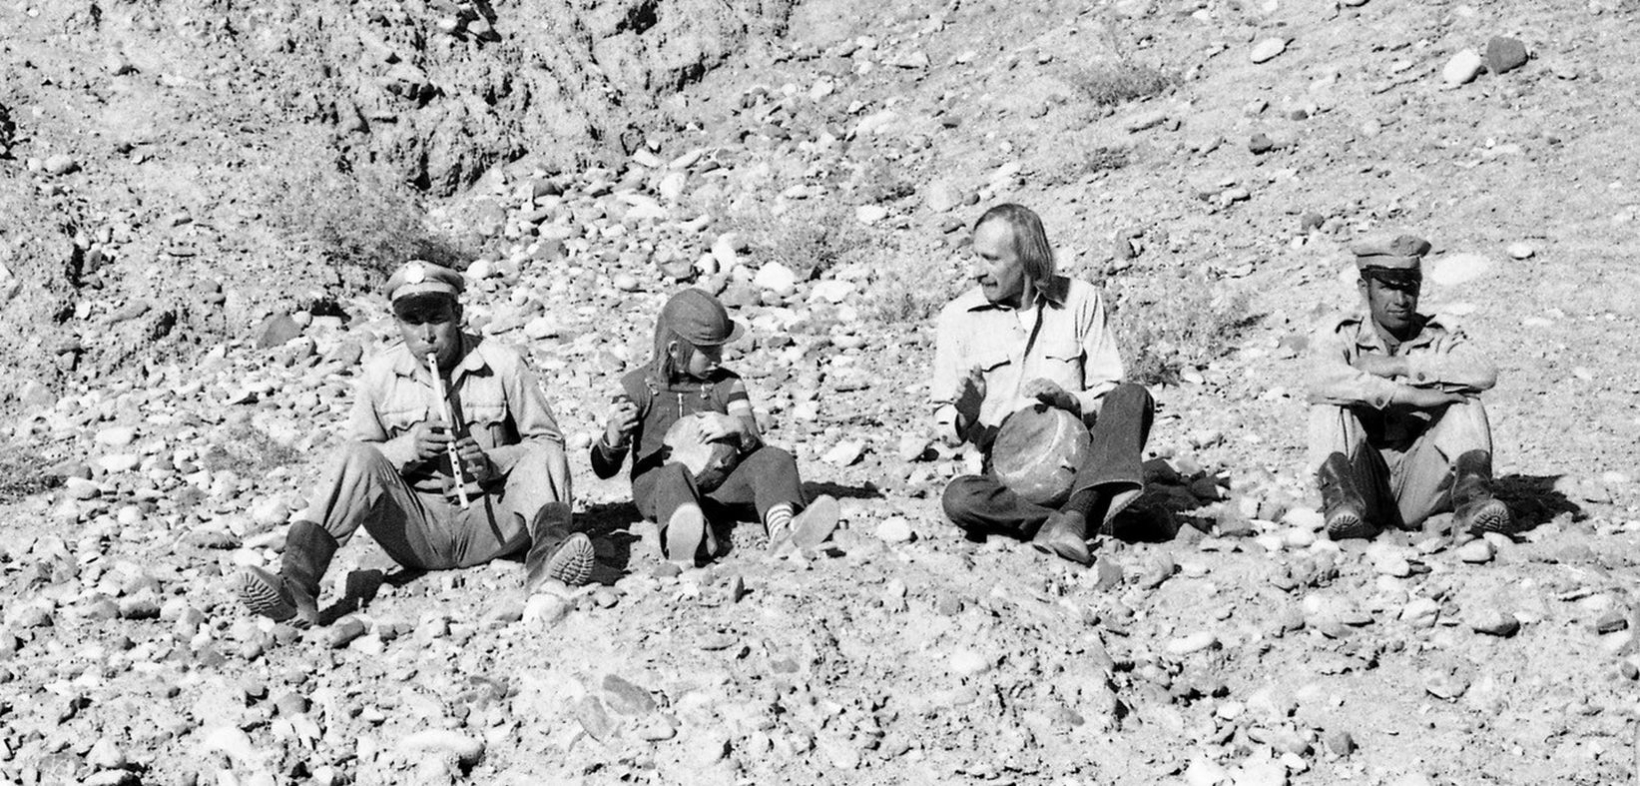 Hartmut Geerken musiziert sitzend auf Geröll mit zwei anderen afghanischen Männern. Einer spielt Flöte, zwei spielen Tabla, einer vierter Mann sitzt rechts daneben ohne Instrument. Alle sitzen auf Geröll in einer felsigen Landschaft. Schwarzweiß-Aufnahme